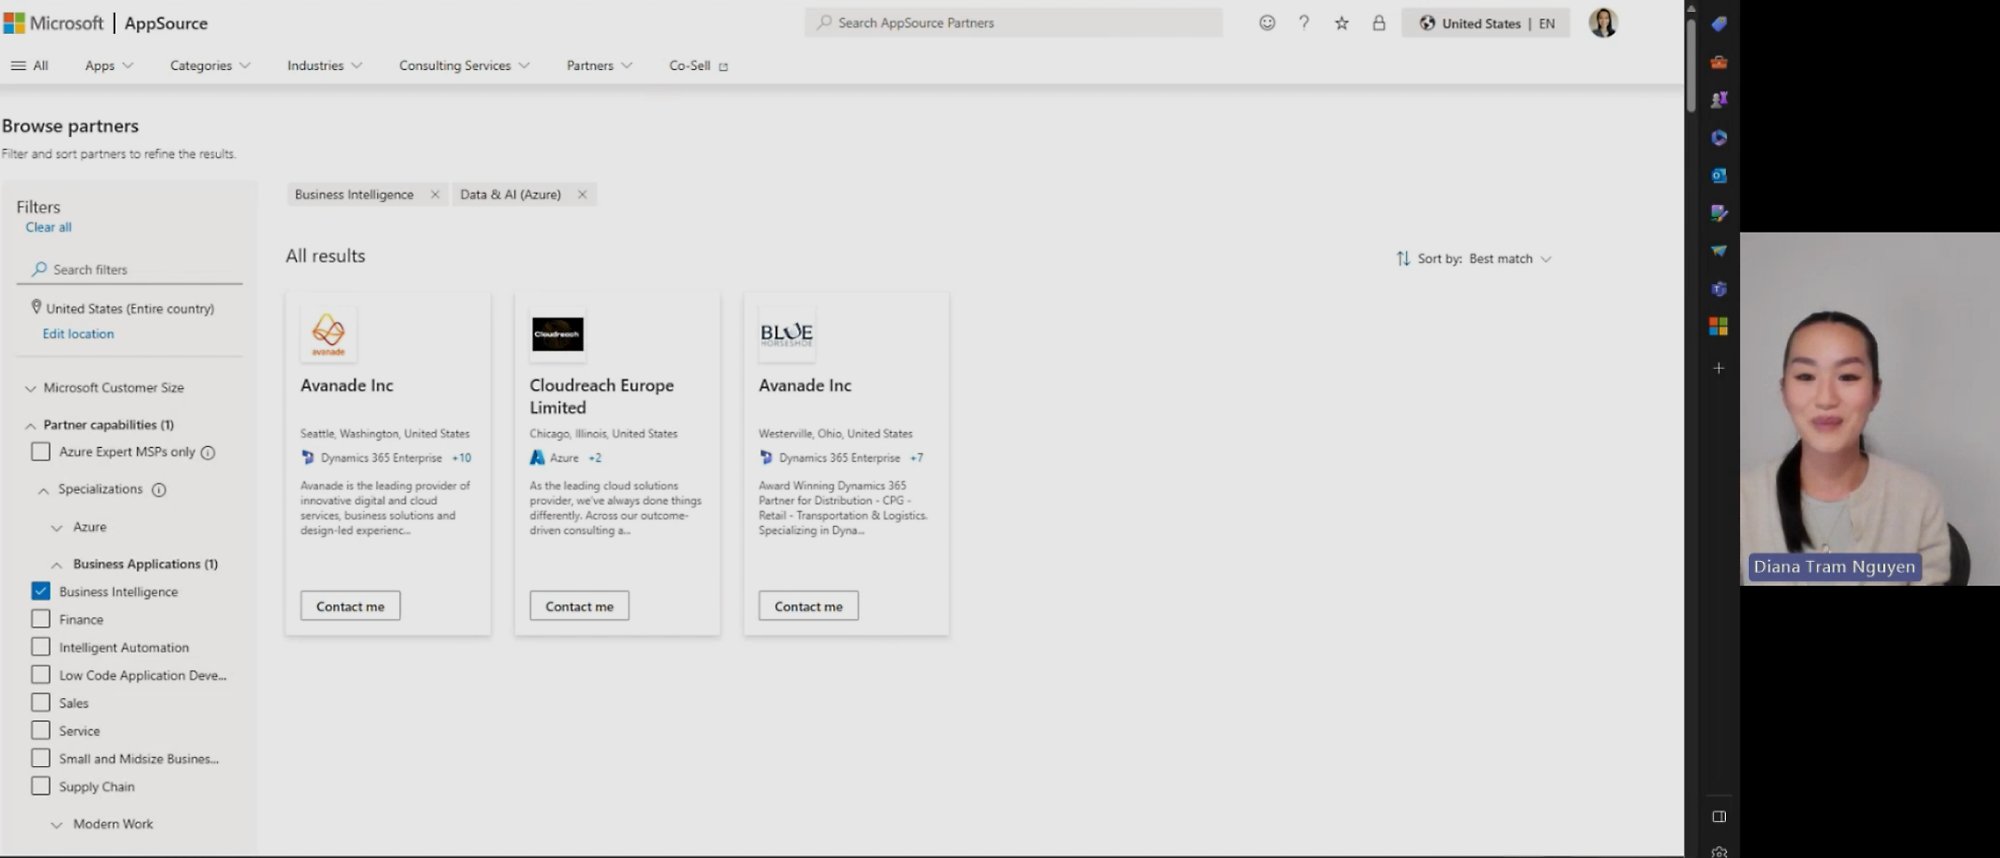 影片的螢幕截圖顯示 Microsoft AppSource 上瀏覽合作夥伴的相關頁面